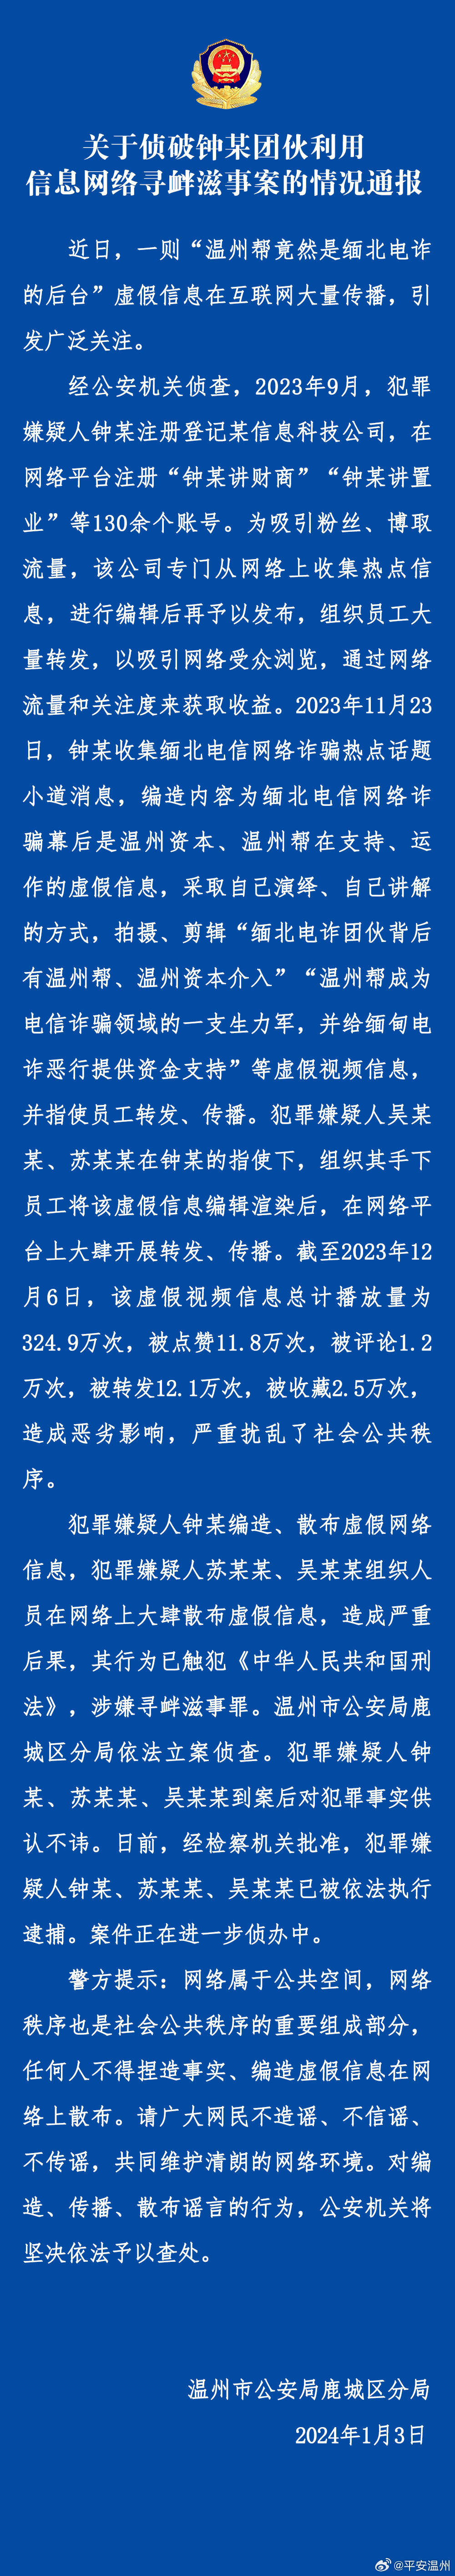 3人编造“温州帮是缅北电诈后台”谣言被捕